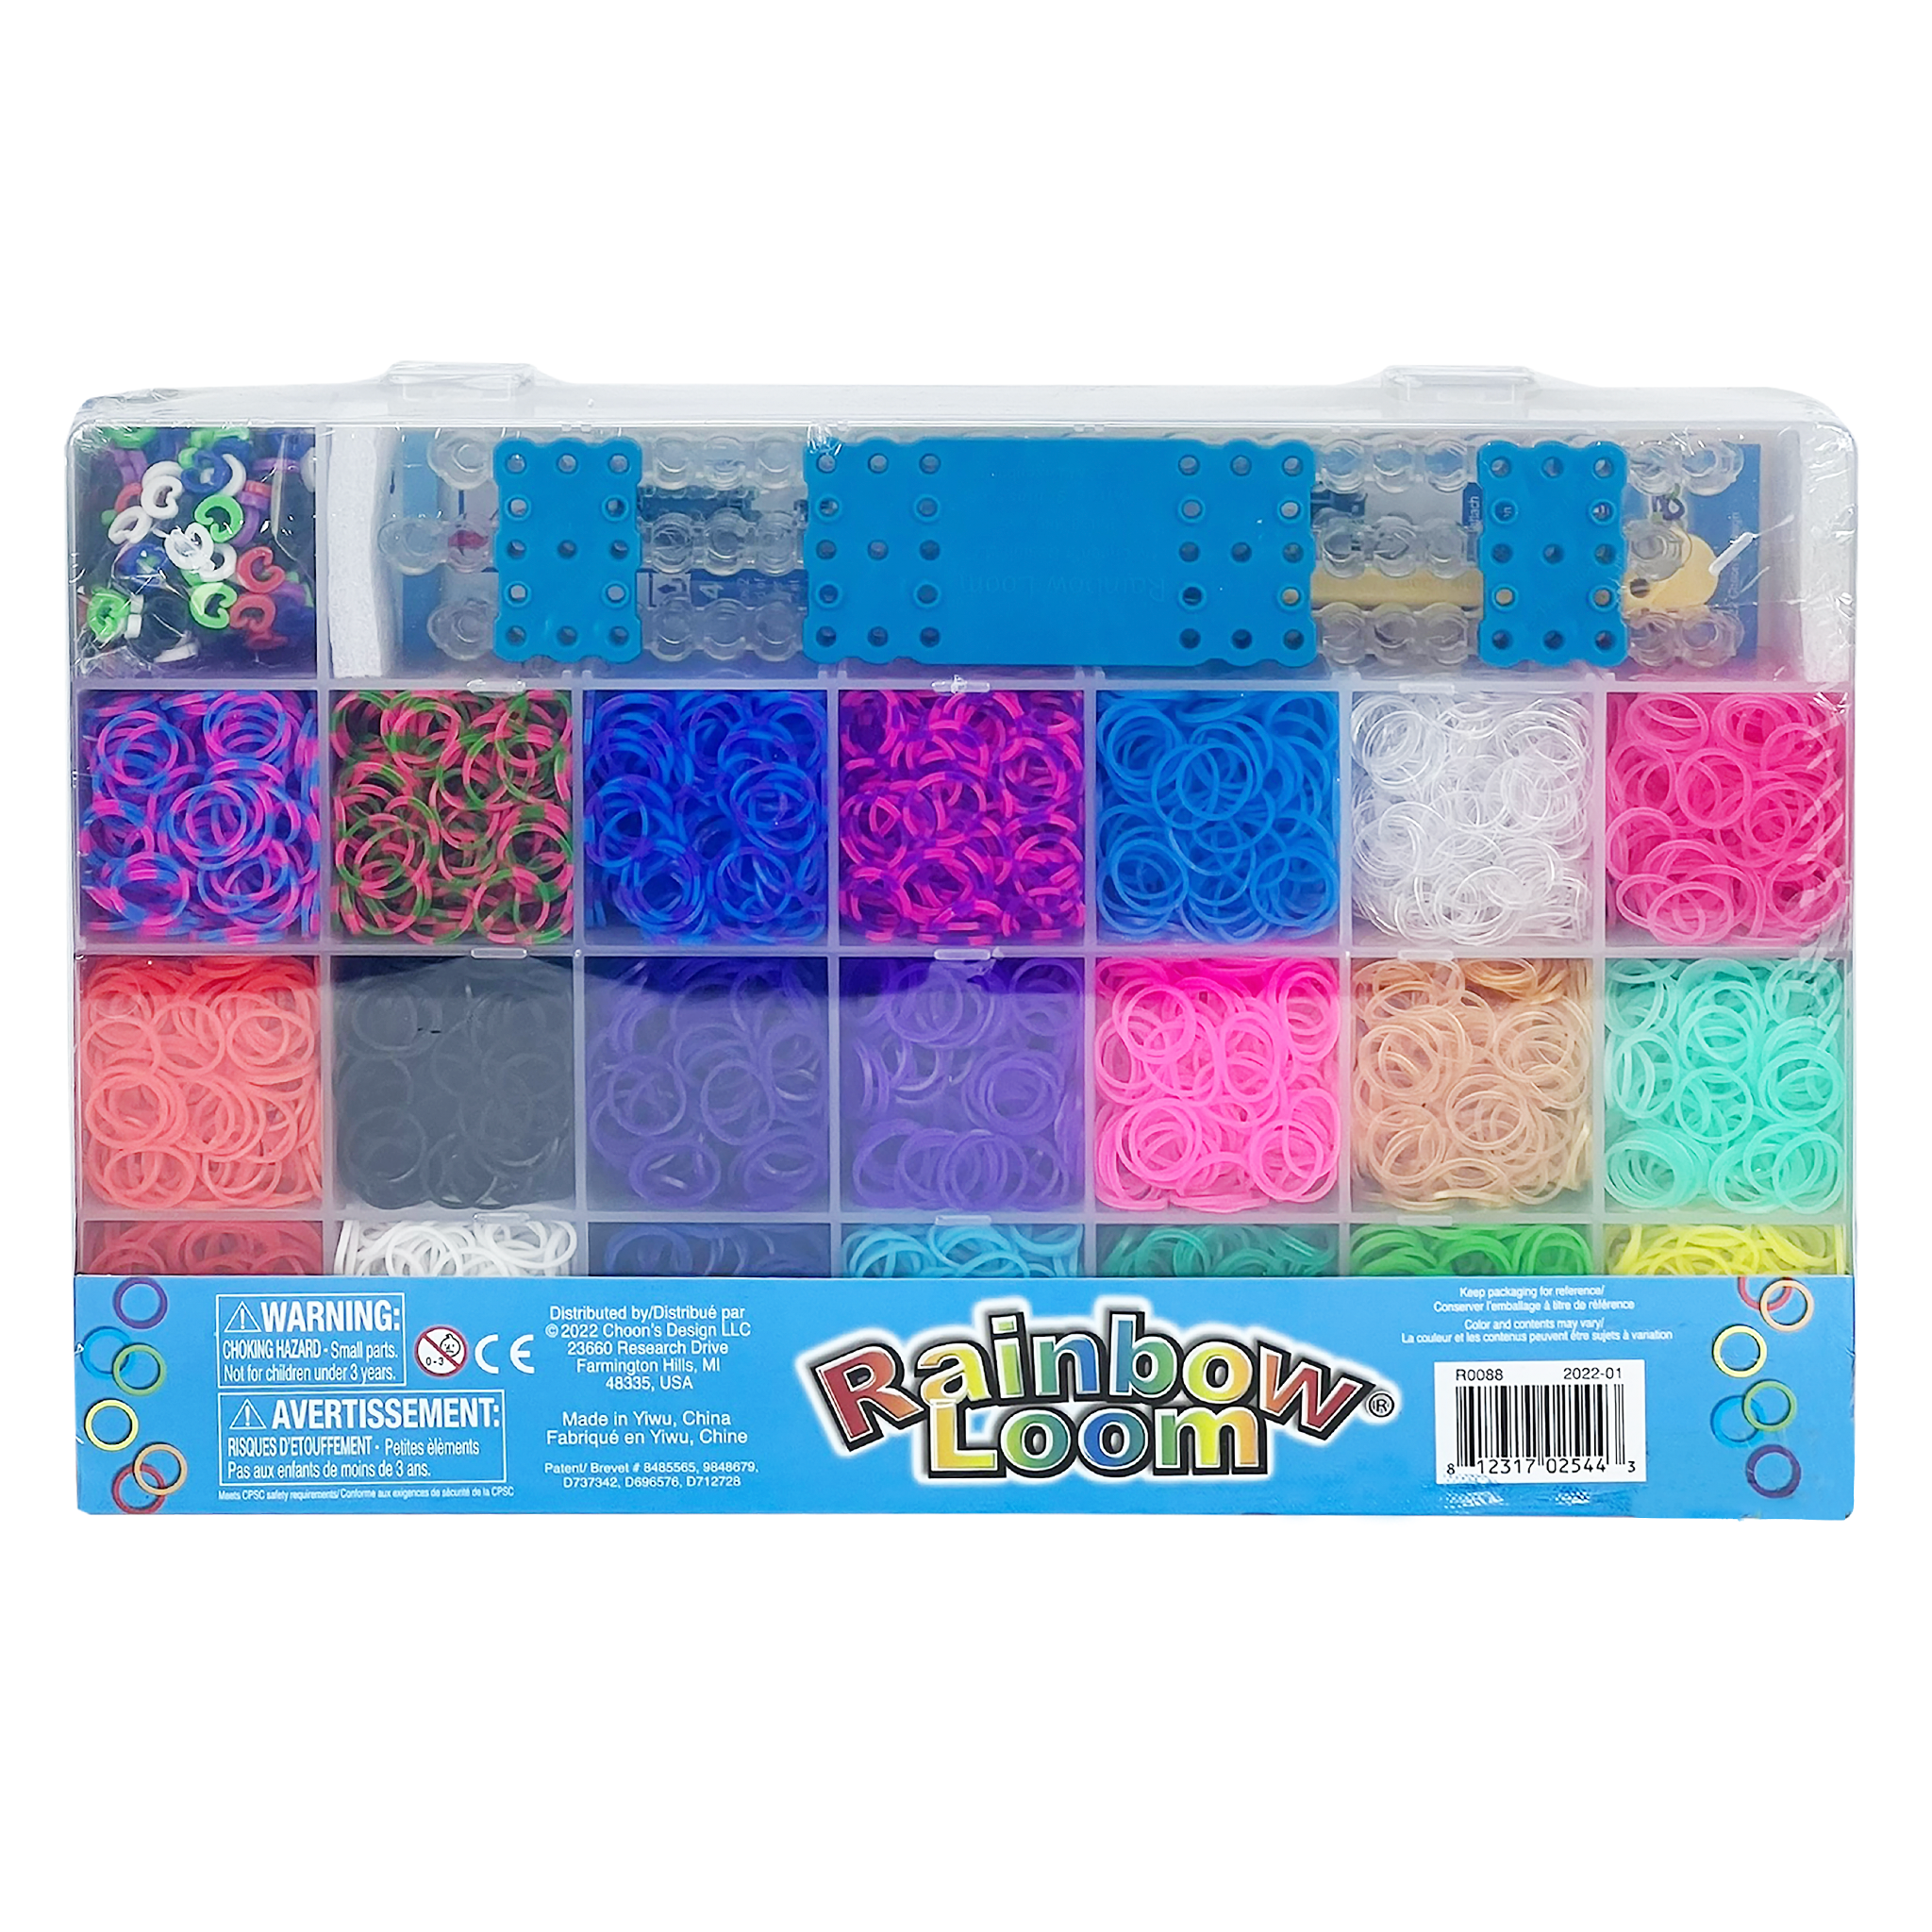 Mega Combo Rainbow Loom Set – Orange Otter Toys